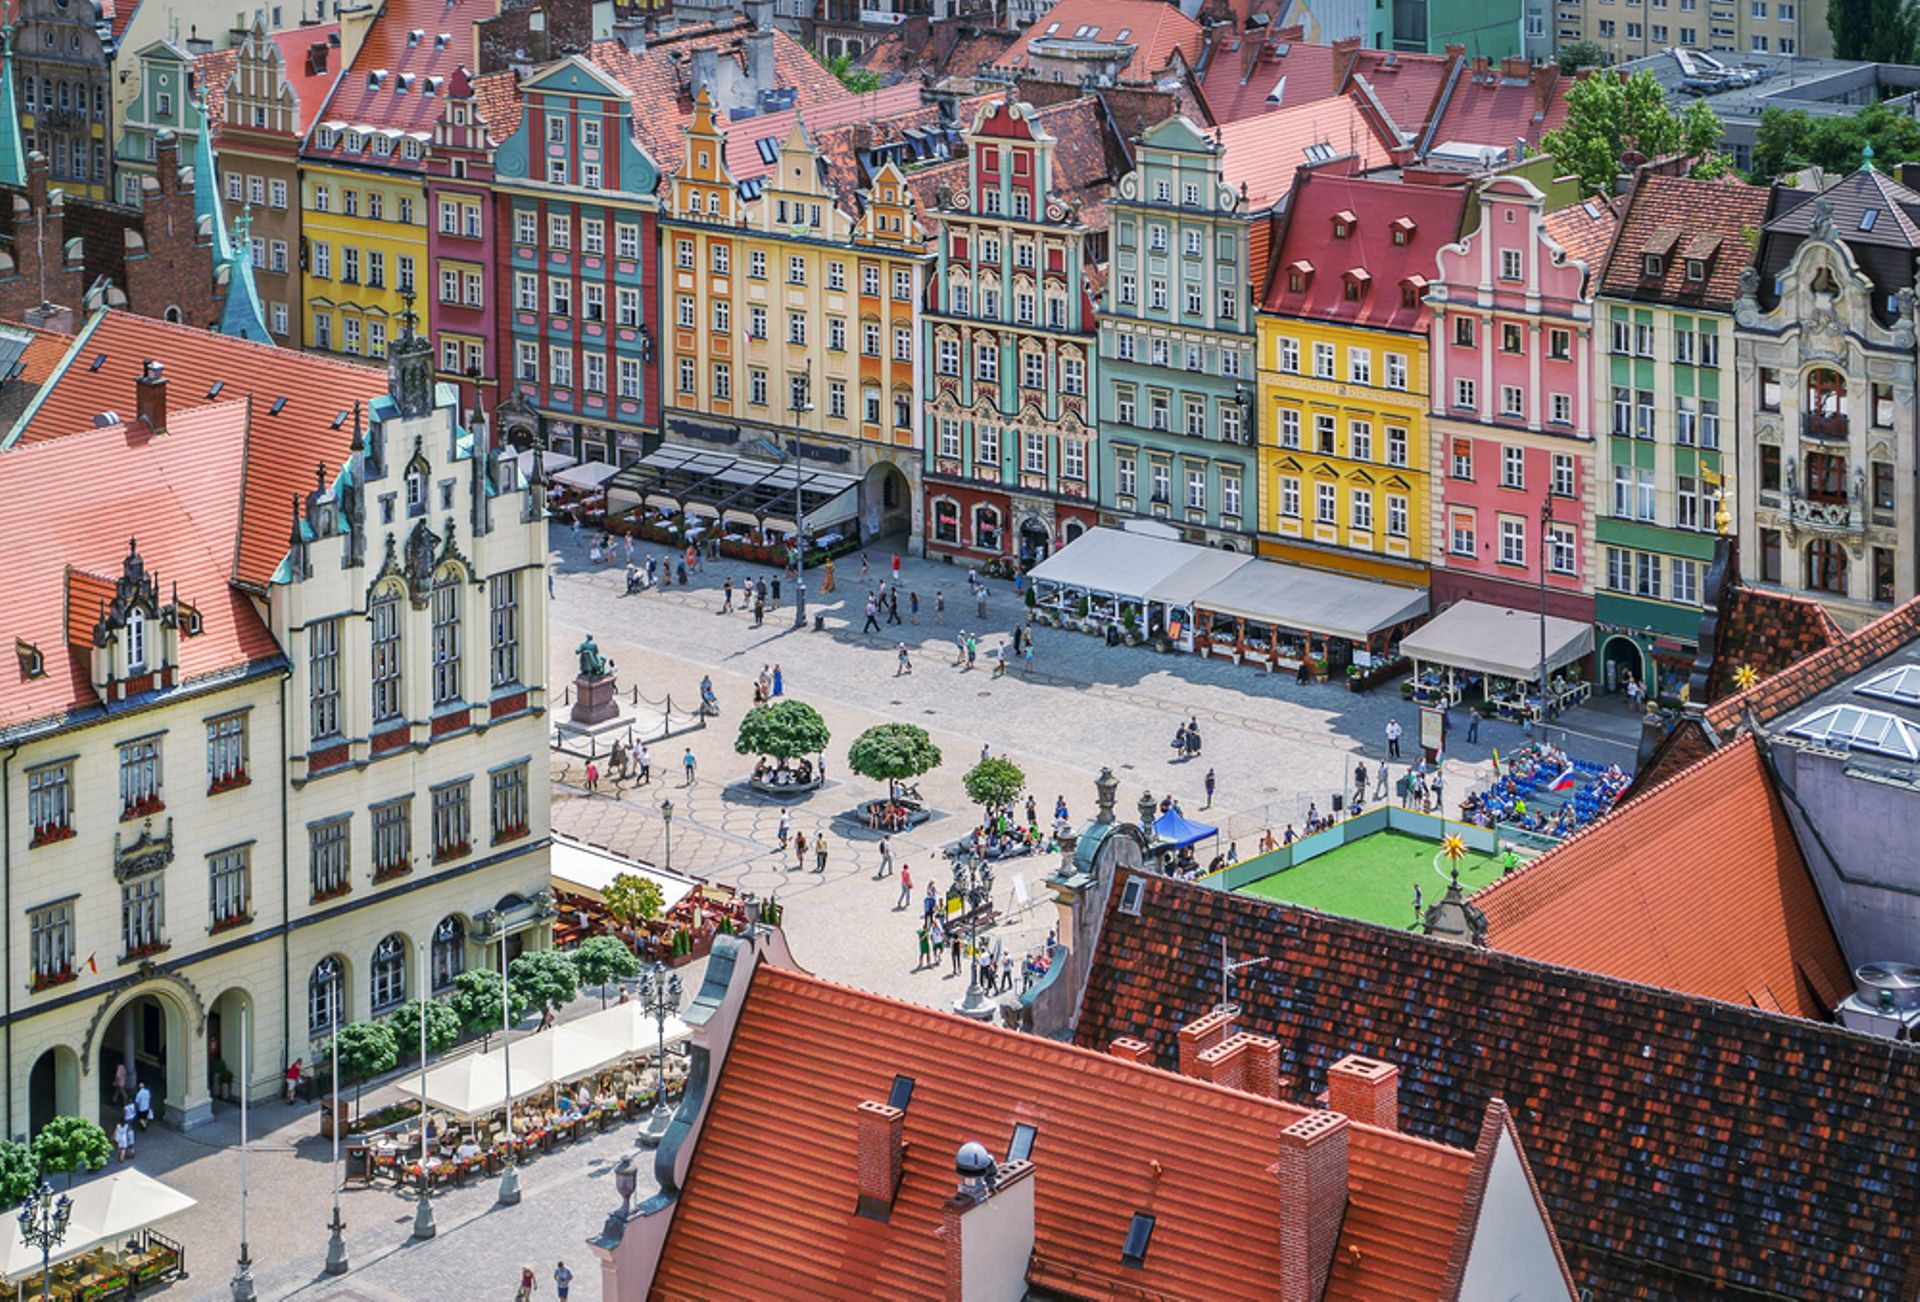 Concurrente de Prague au temps du Moyen-Age, Wroclaw est l'une des plus anciennes villes d'Europe.